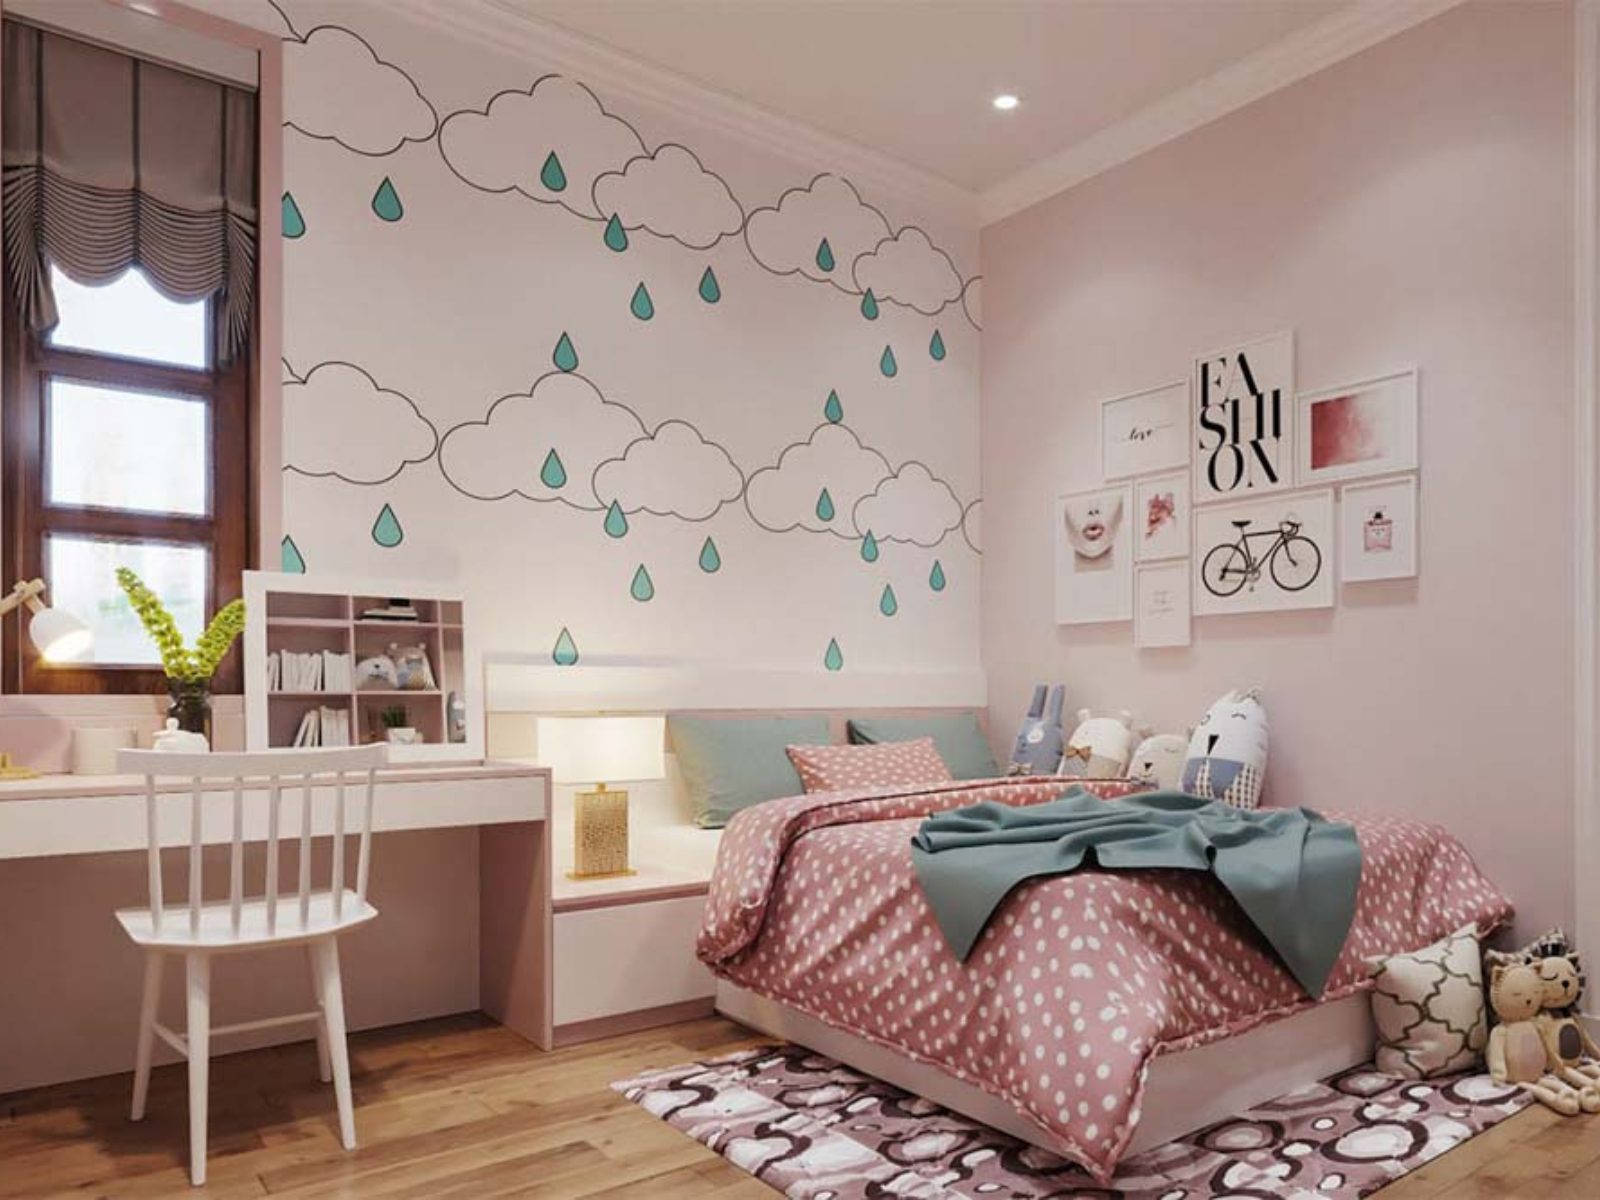 Phòng ngủ cho bé gái 6 tuổi với giấy dán tường, tranh và gấu bông